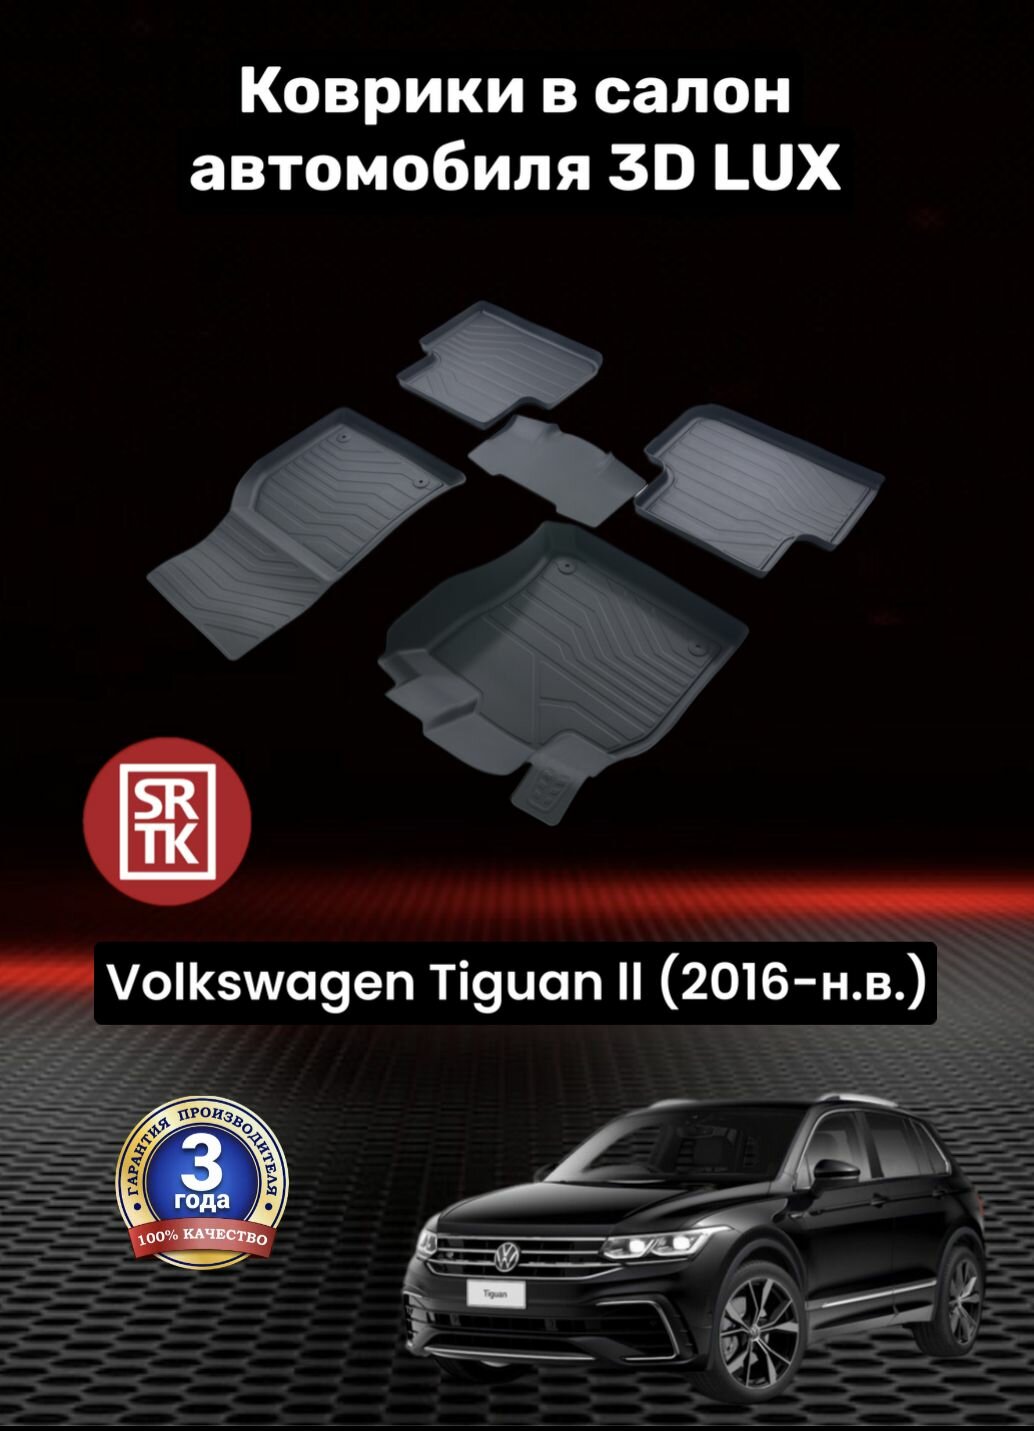 Коврики резиновые в салон для Фольксваген Тигуан 2/Volkswagen Tiguan II (2016-) 3D LUX SRTK (Саранск) комплект в салон